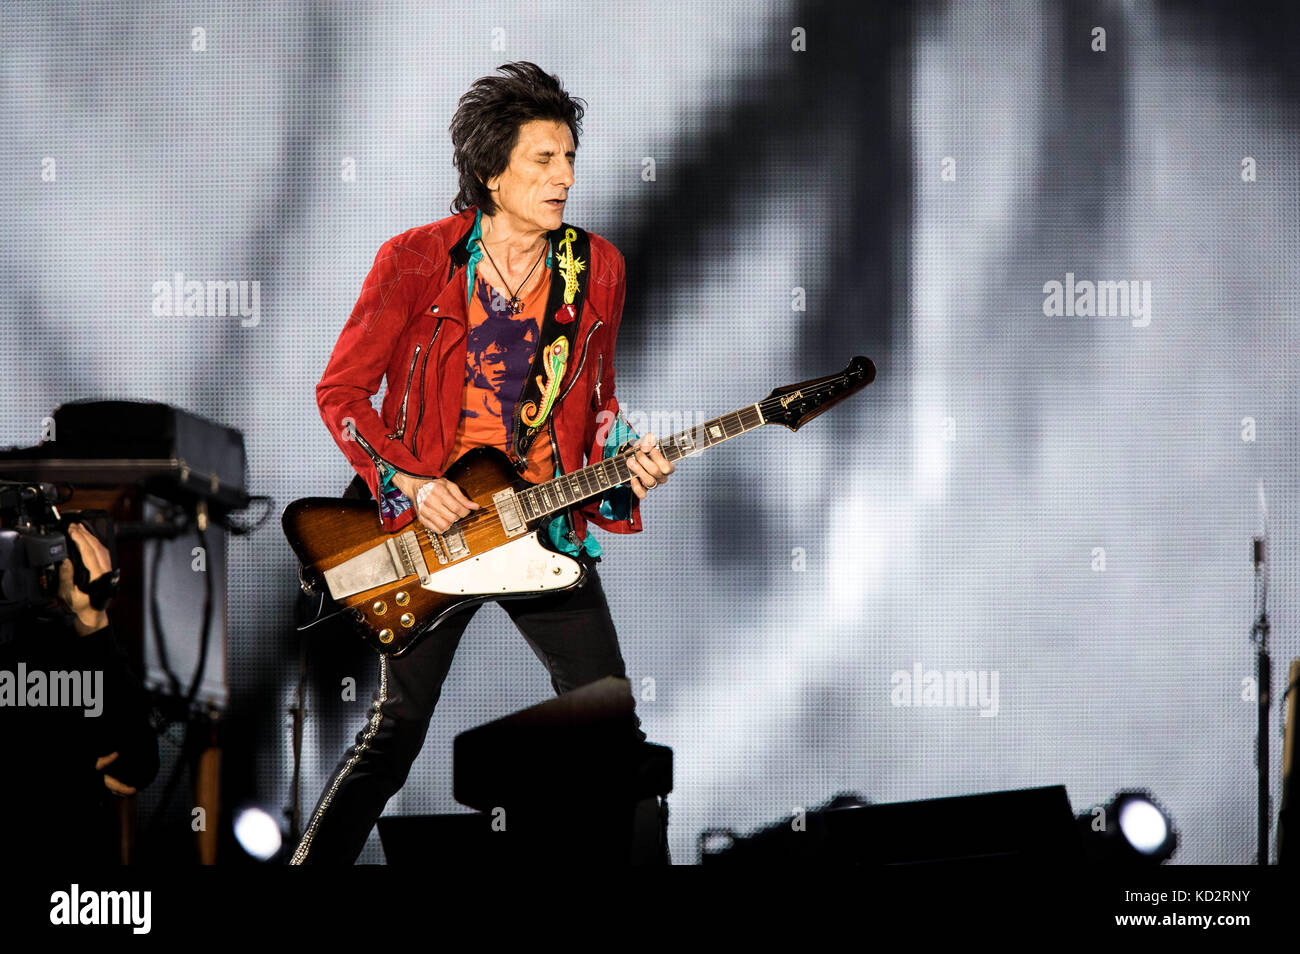 Düsseldorf, Deutschland. Oktober 2017. Ron Wood von den Rolling Stones  tritt live auf der Bühne während der 'No Filter' Europa Tour in der Esprit  Arena am 9. Oktober 2017 in Düsseldorf auf.